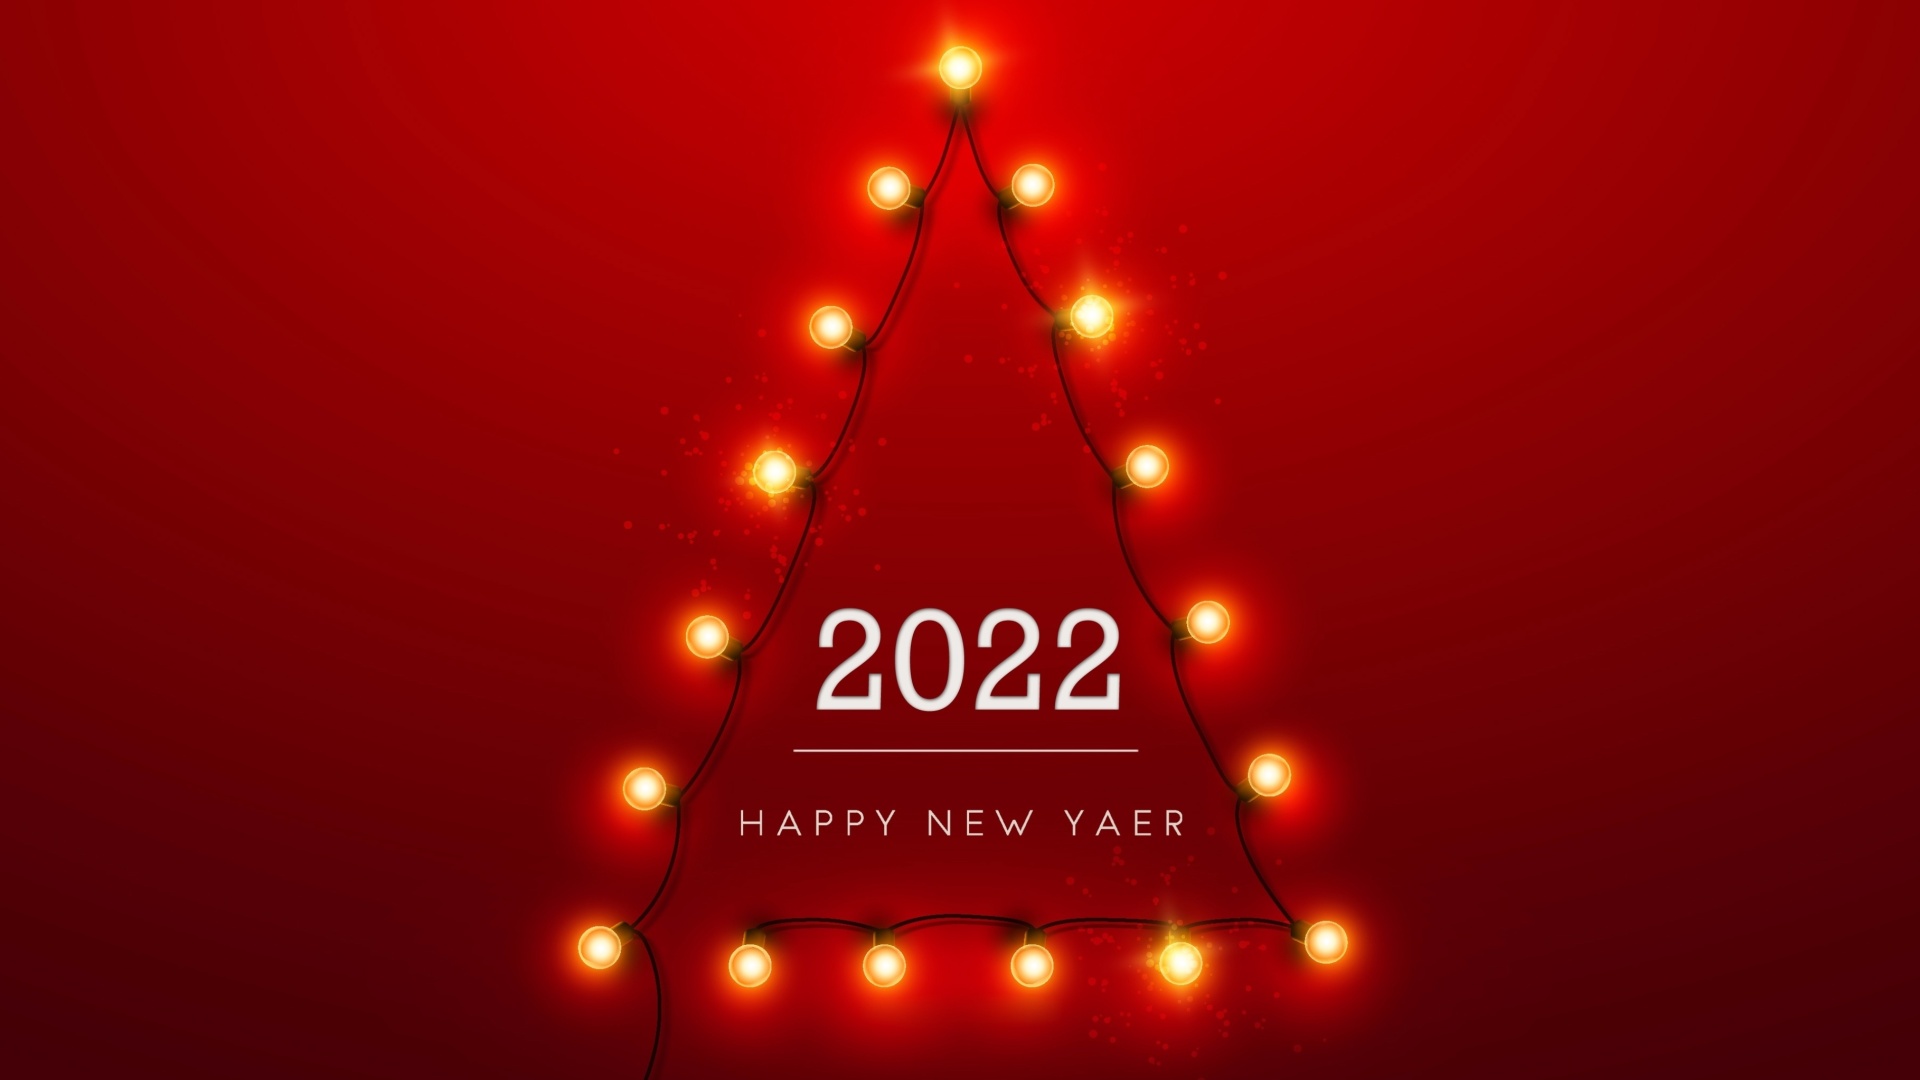 Обои Happy New Year 2022 1920x1080